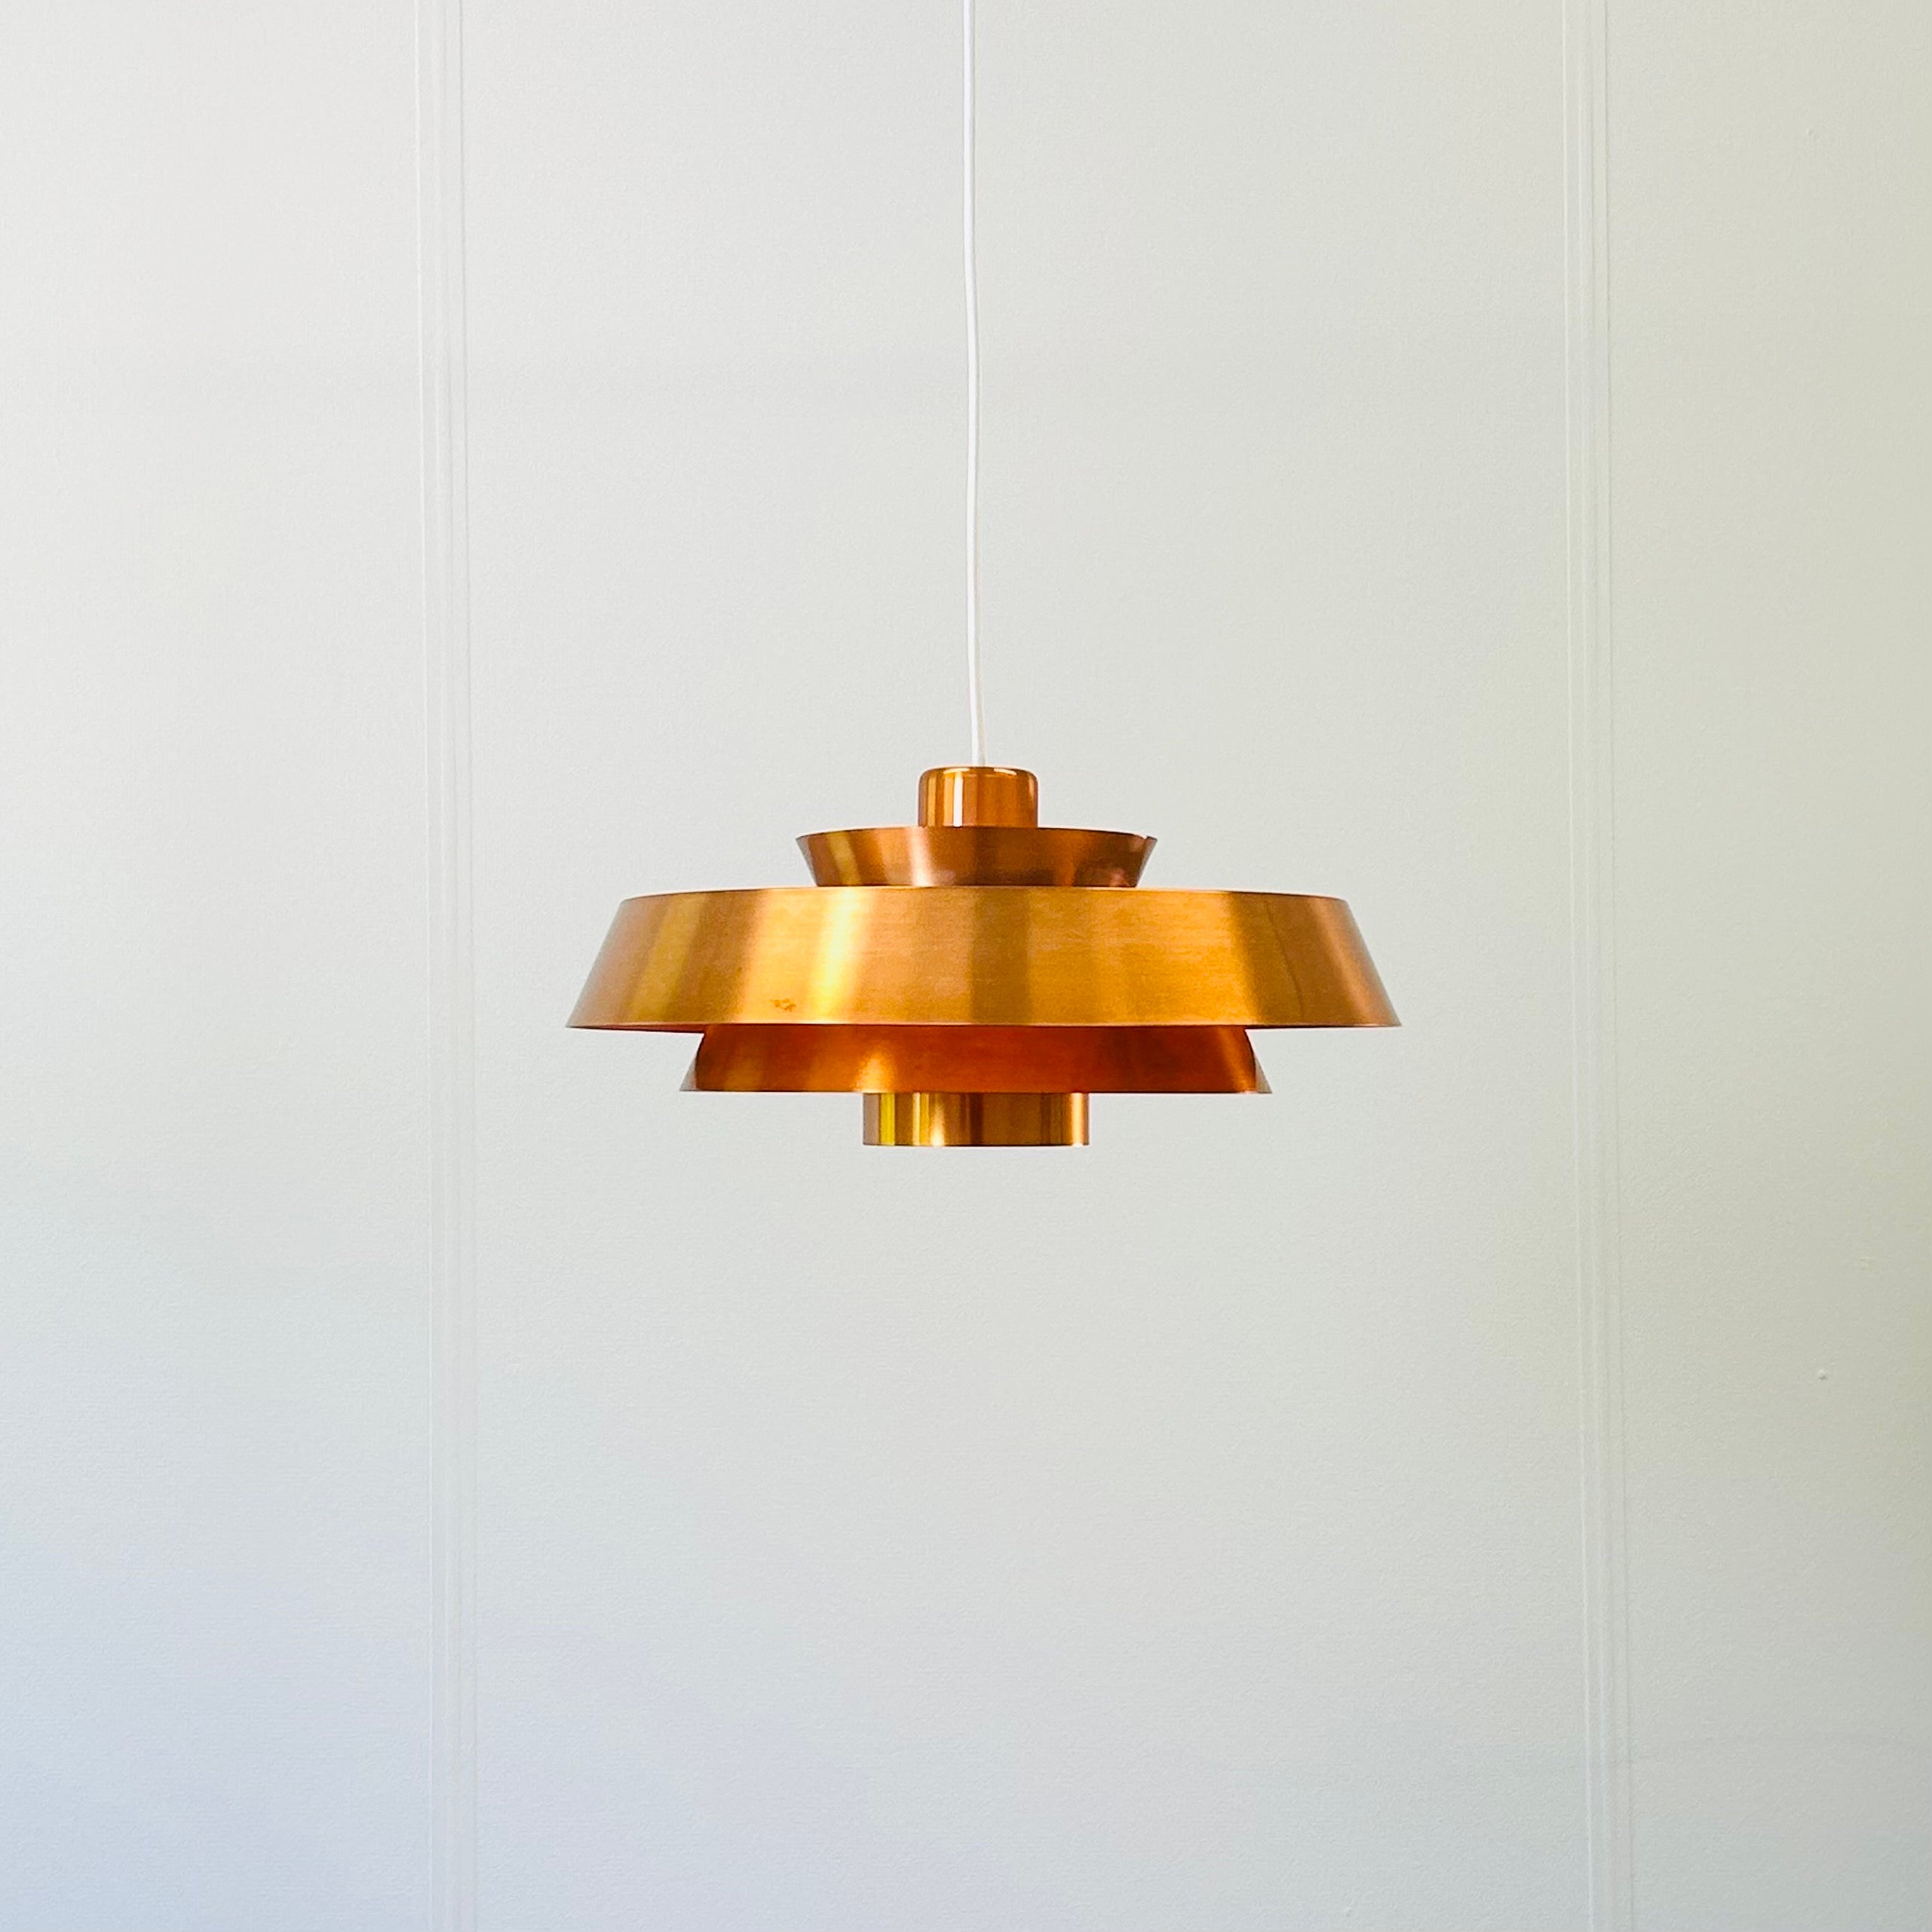 Danish Copper Nova Pendant Light by Jo Hammerborg for Fog & Morup, 1960s, Denmark For Sale